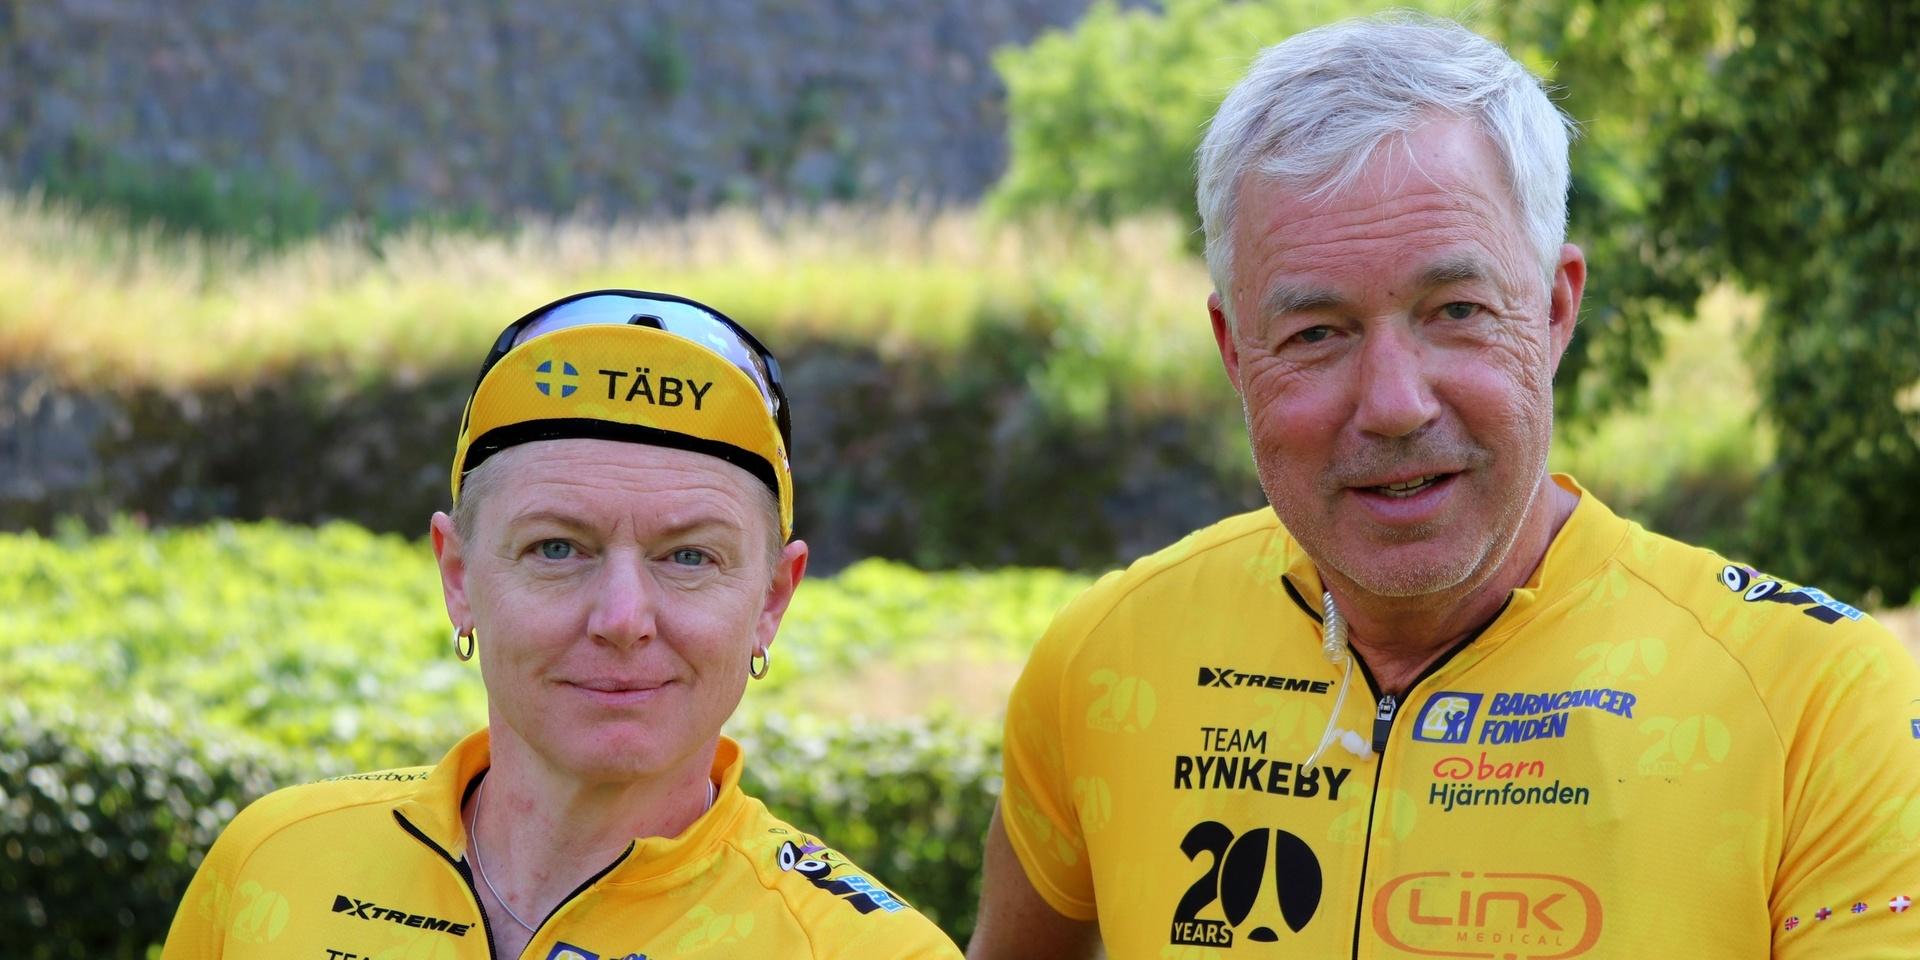 Cyklisterna Jenny Widing och Jan Aronsson från team Rynkeby - Godmorgon. De är på väg till Malmö med Täbylaget. 